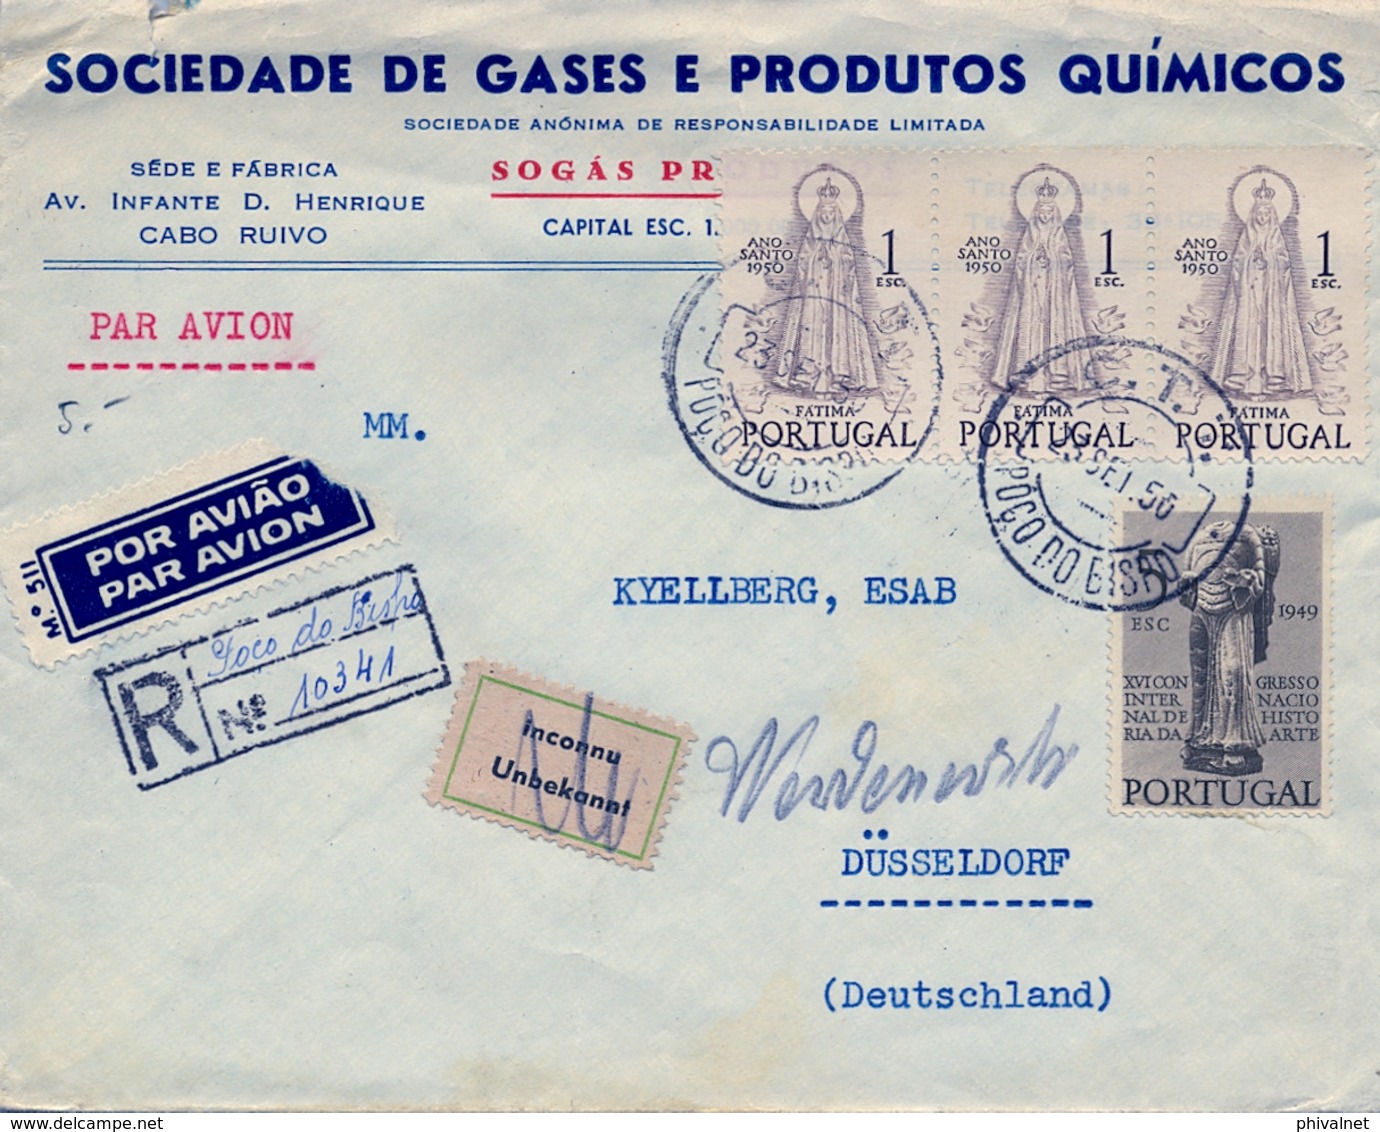 1950 PORTUGAL , POÇO DO BISPO - DÜSSELDORF , CERTIFICADO POR VIA AÉREA , TRÁNSITO LISBOA , LLEGADA , DESCONOCIDO - Cartas & Documentos